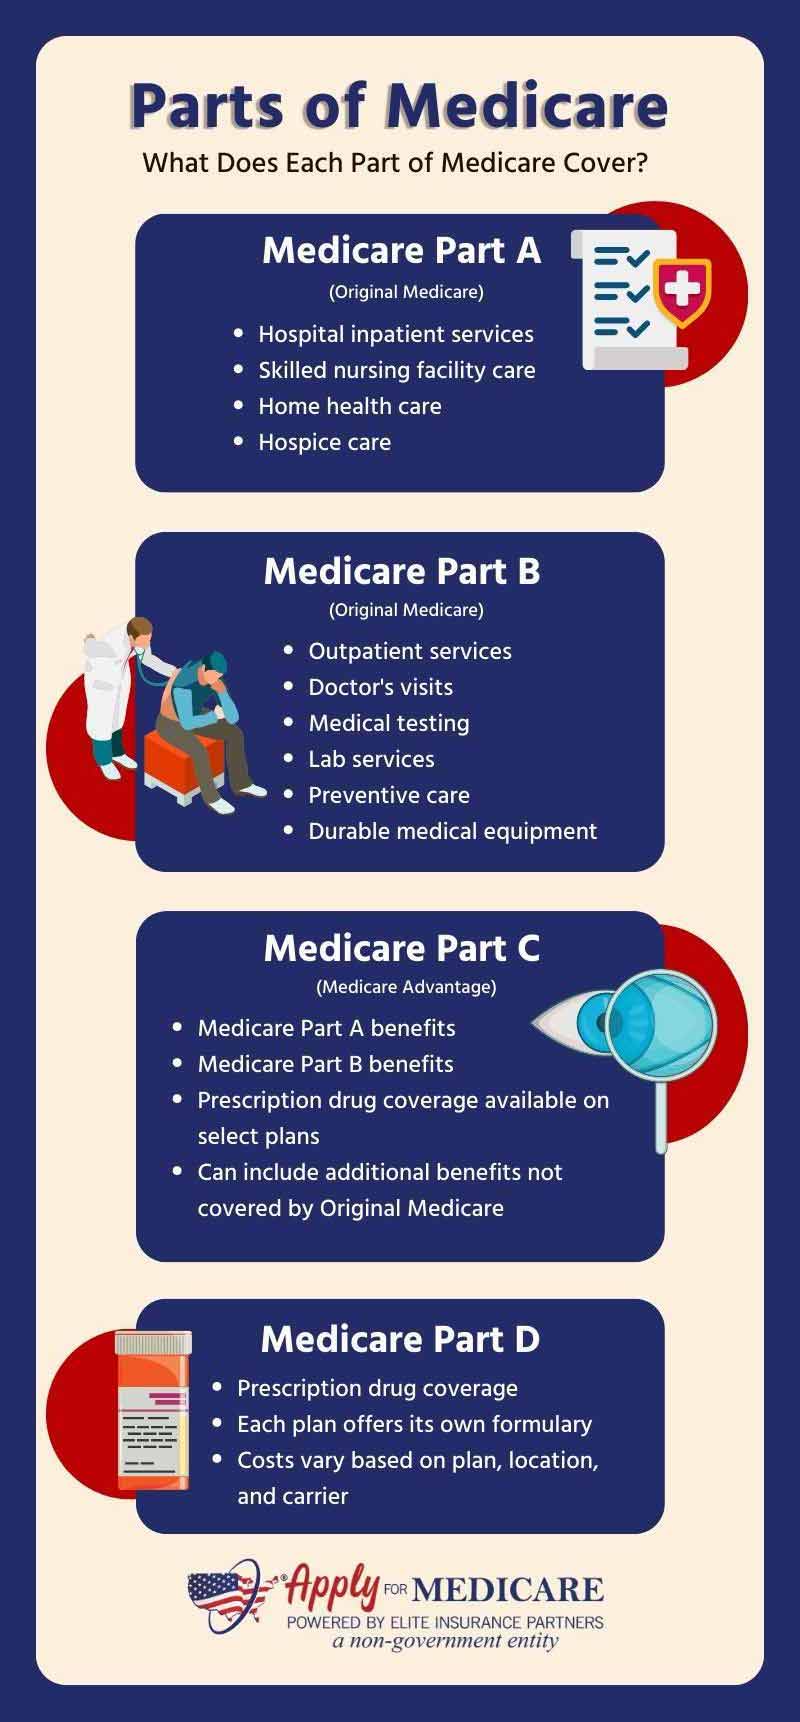 The Four Parts of Medicare: Medicare Part A, Part B, Part C, and Part D